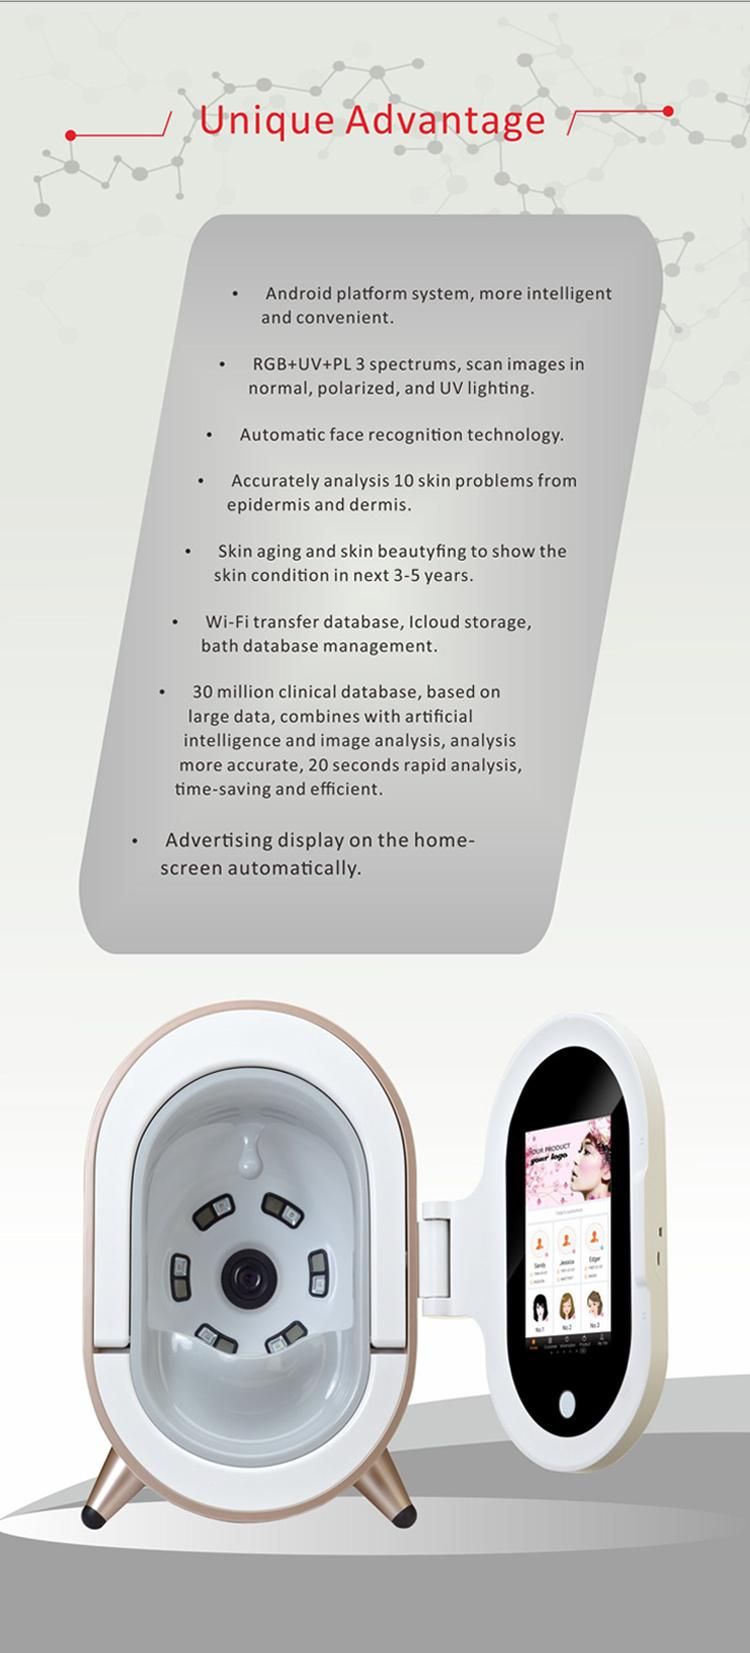 Skin Analyzer 2019 Magic Mirror Portable Skin Analyzer for Sale